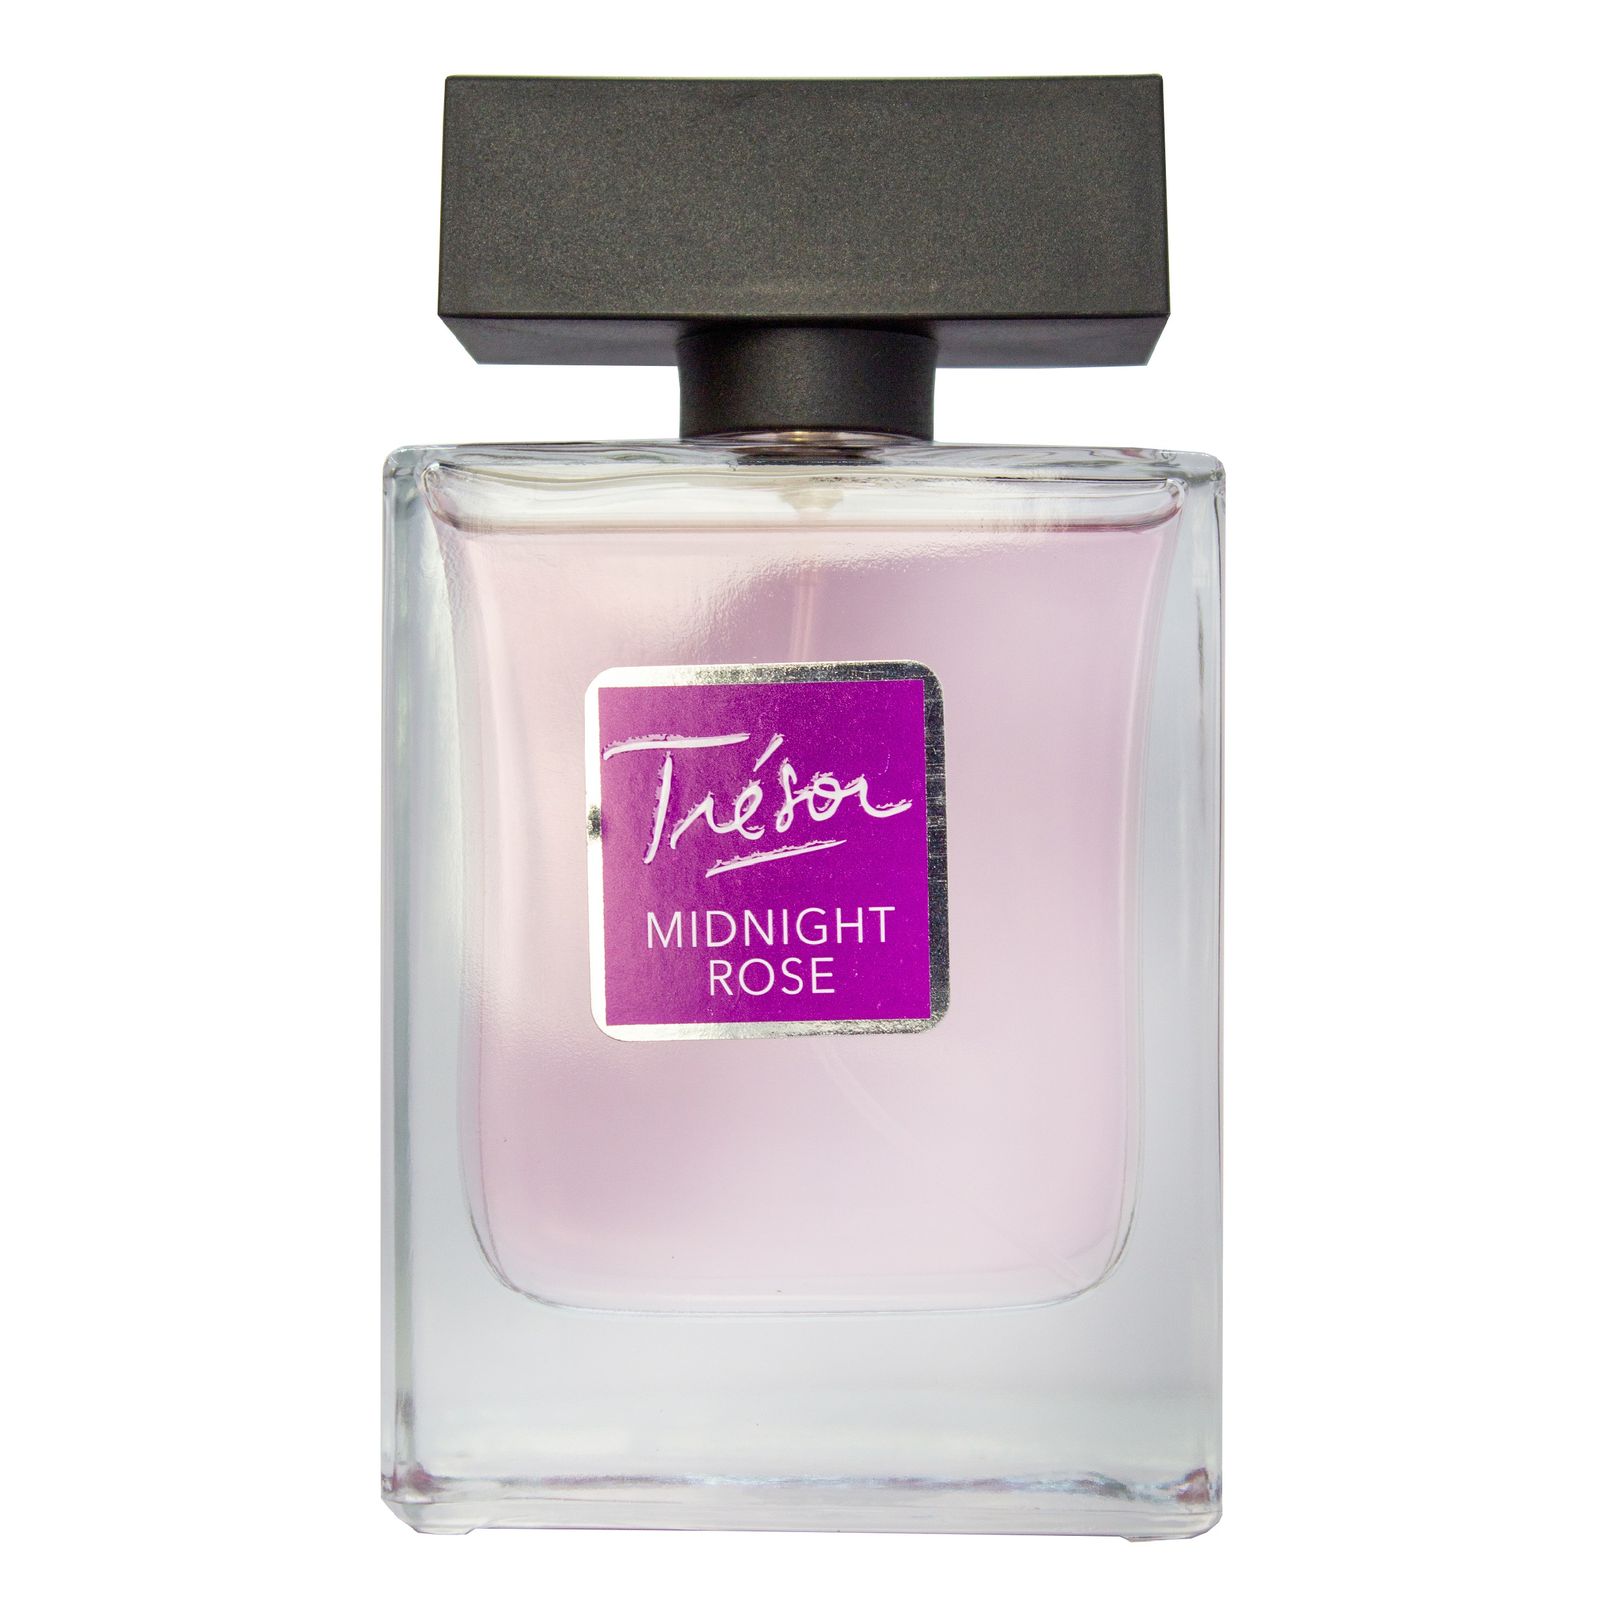 ادو تویلت زنانه پرستیژ مدل Tresor midnight Rose حجم 100 میلی لیتر -  - 1